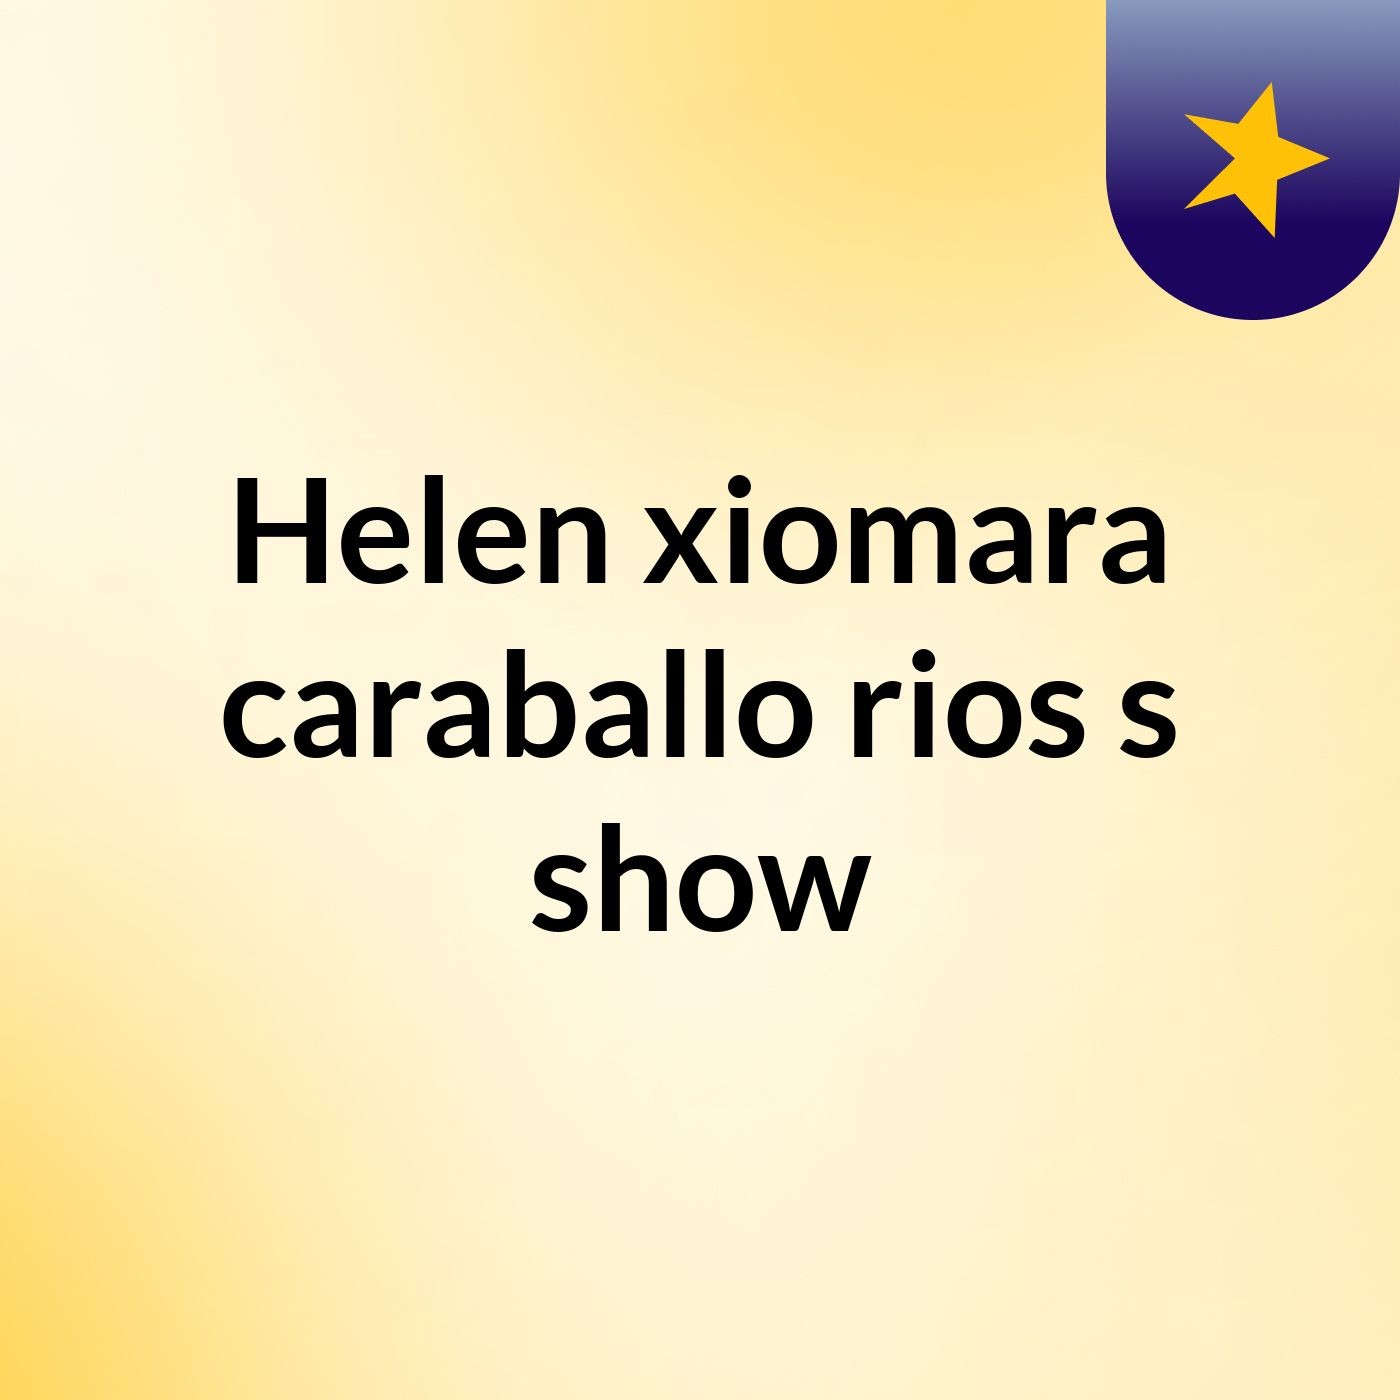 Helen xiomara caraballo rios's show